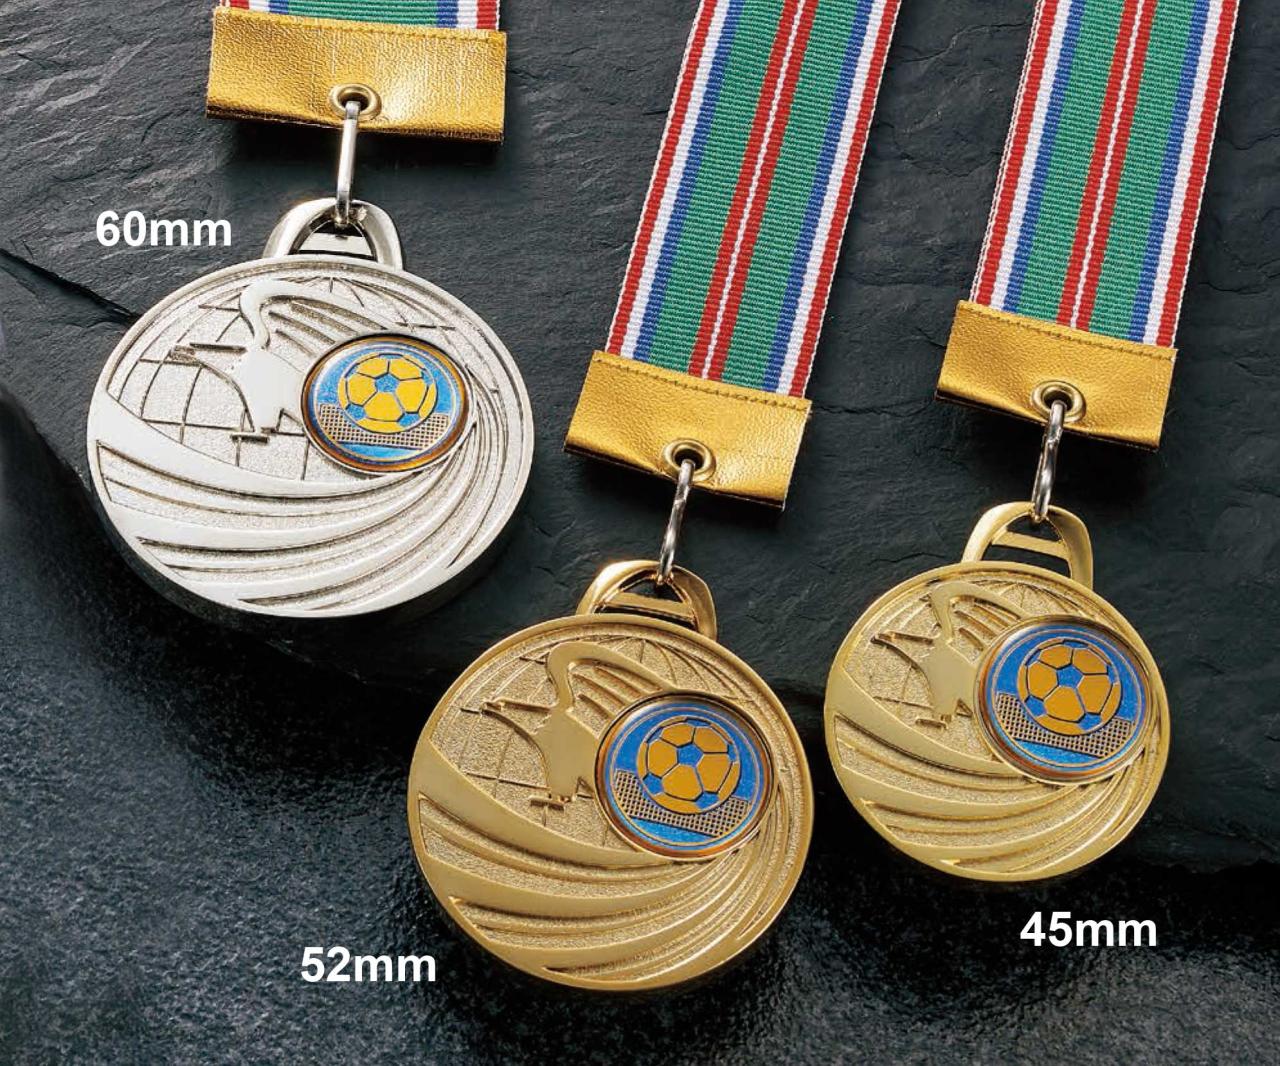 ボディビル用メダル 52ｍｍ(5RM)